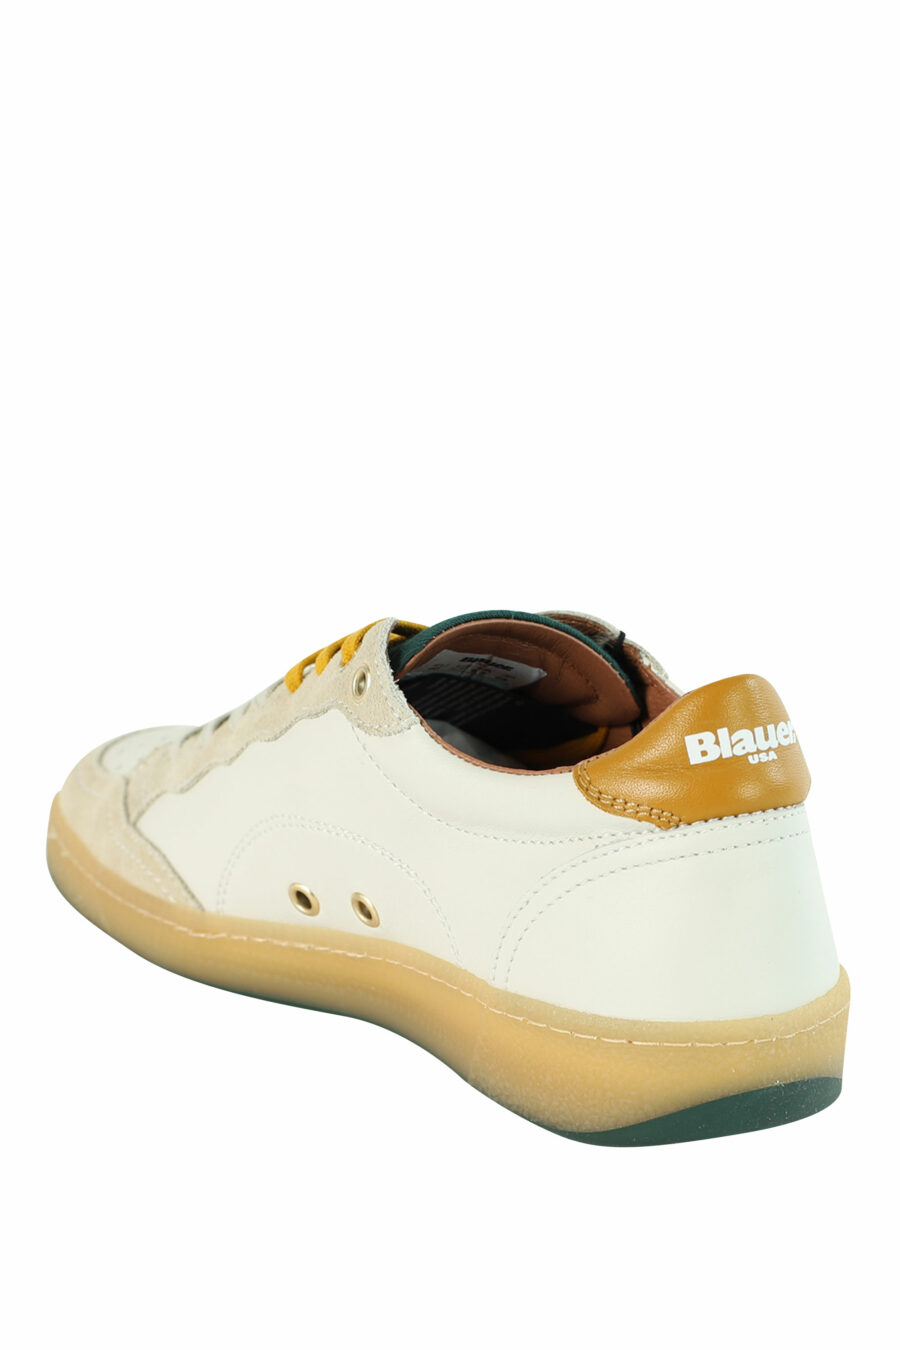 Zapatillas "MURRAY" blancas con detalles verdes y amarillos - 8058156497566 4